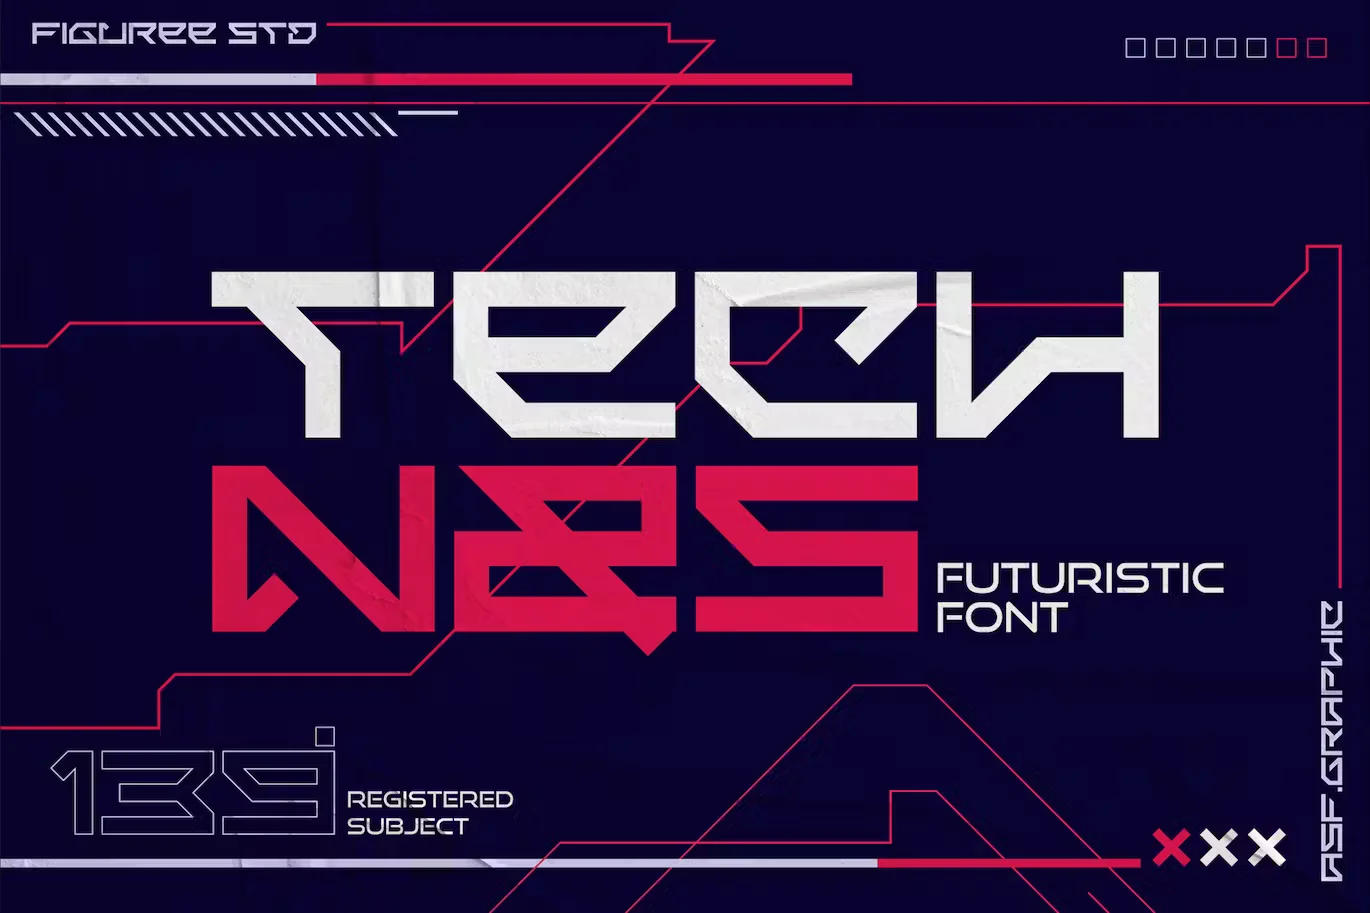 Technos - Futuristic Font